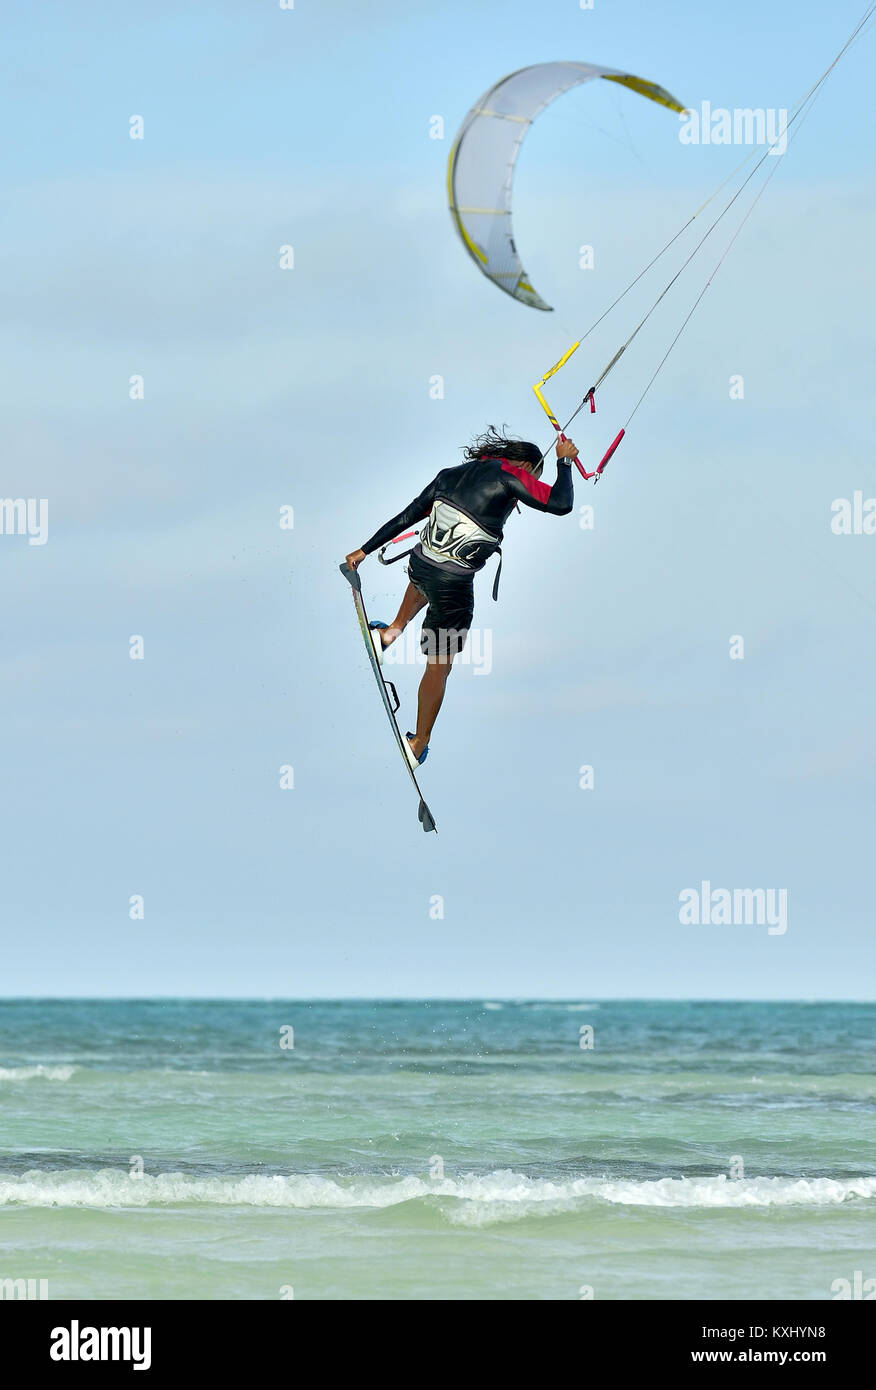 Un kitesurfeur effectuant un numéro de voltige en surf strapless sur une journée ensoleillée. Kiter professionnel rend le truc difficile. Banque D'Images